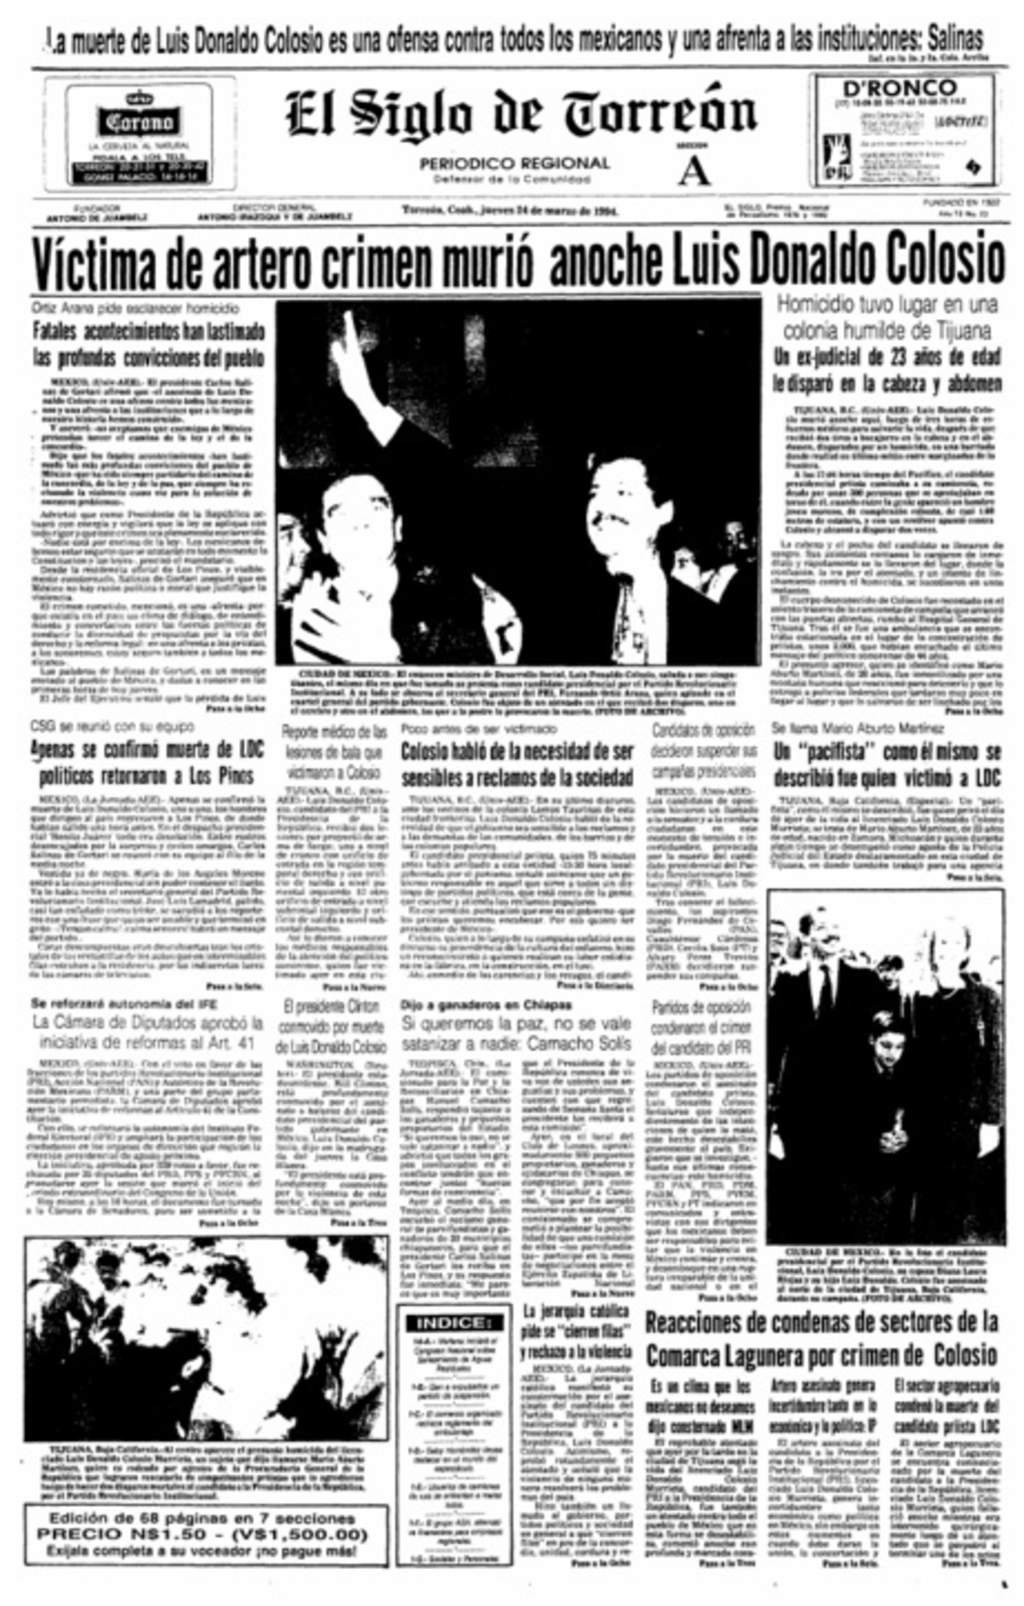 1994: Atentan contra el entonces candidato presidencial Luis Donaldo Colosio